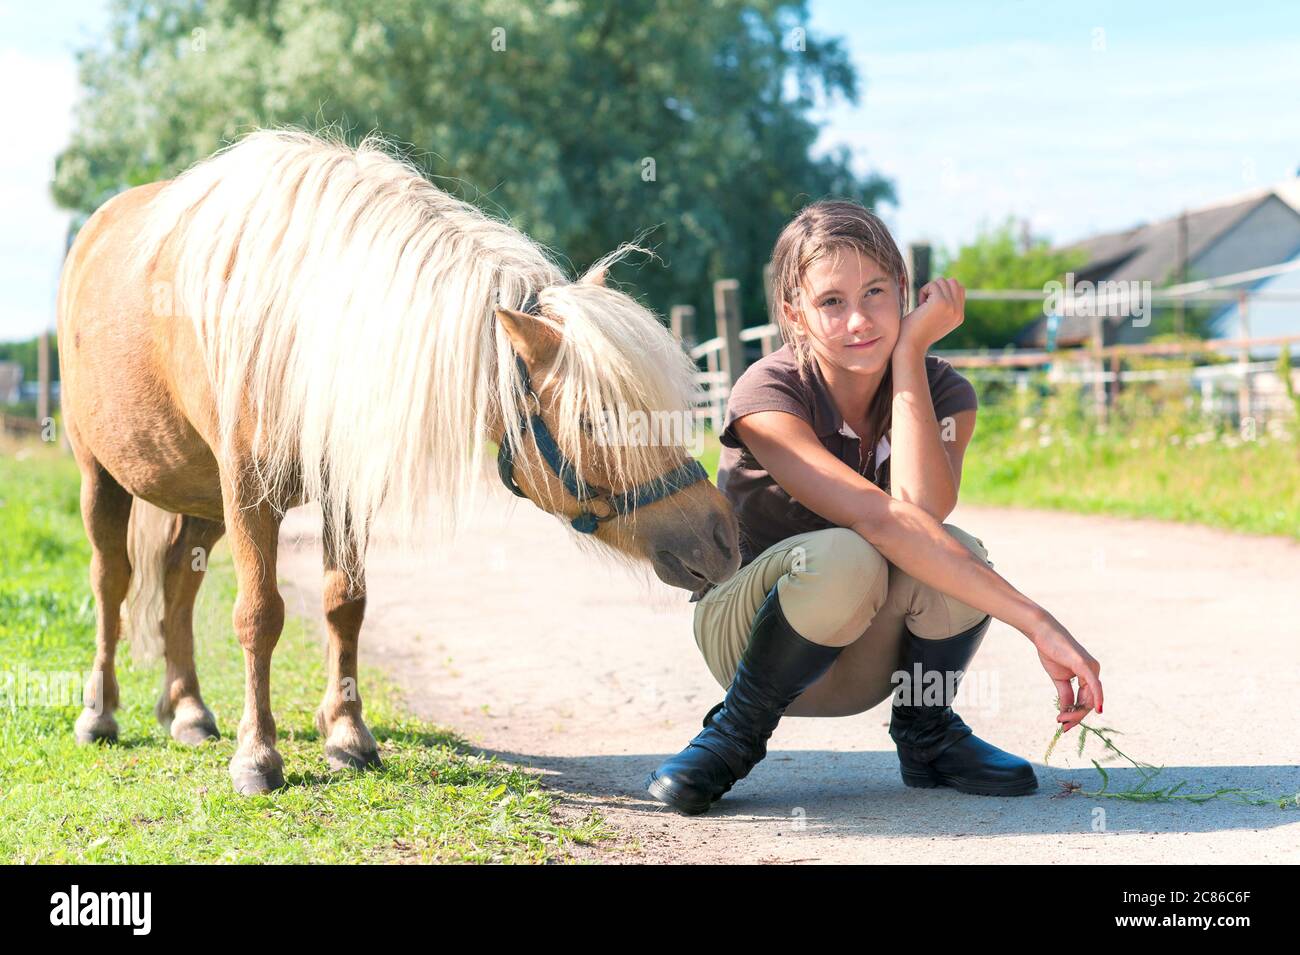 Gehorsam neugierig kleinen shetland Pony Pferd mit seinem Freund Teenager-Mädchen. Mehrfarbiges, horizontales Außenbild für die Sommerzeit. Stockfoto